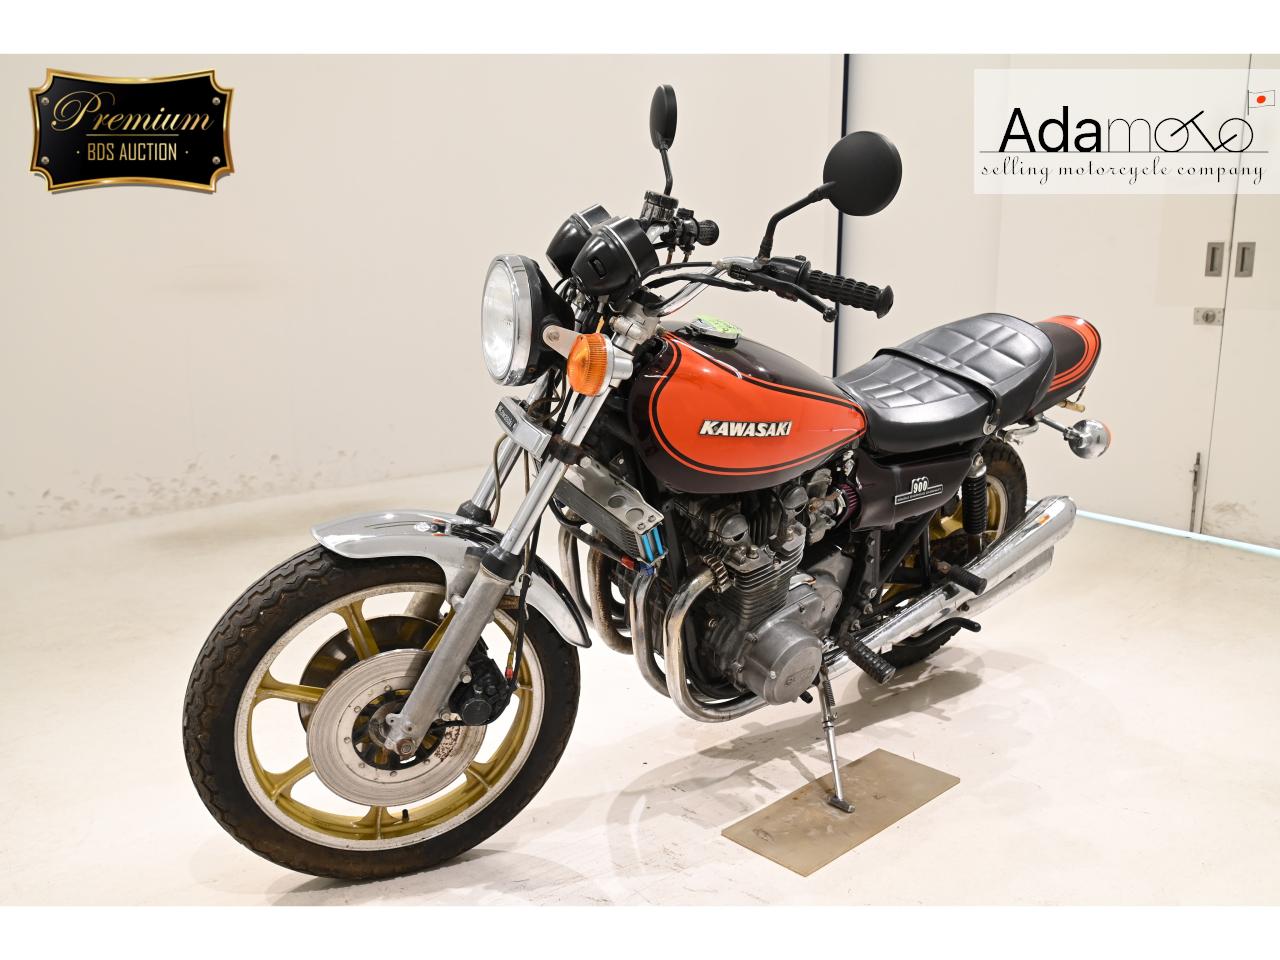 Kawasaki Z900 - Adamoto - Motorcycles from Japan